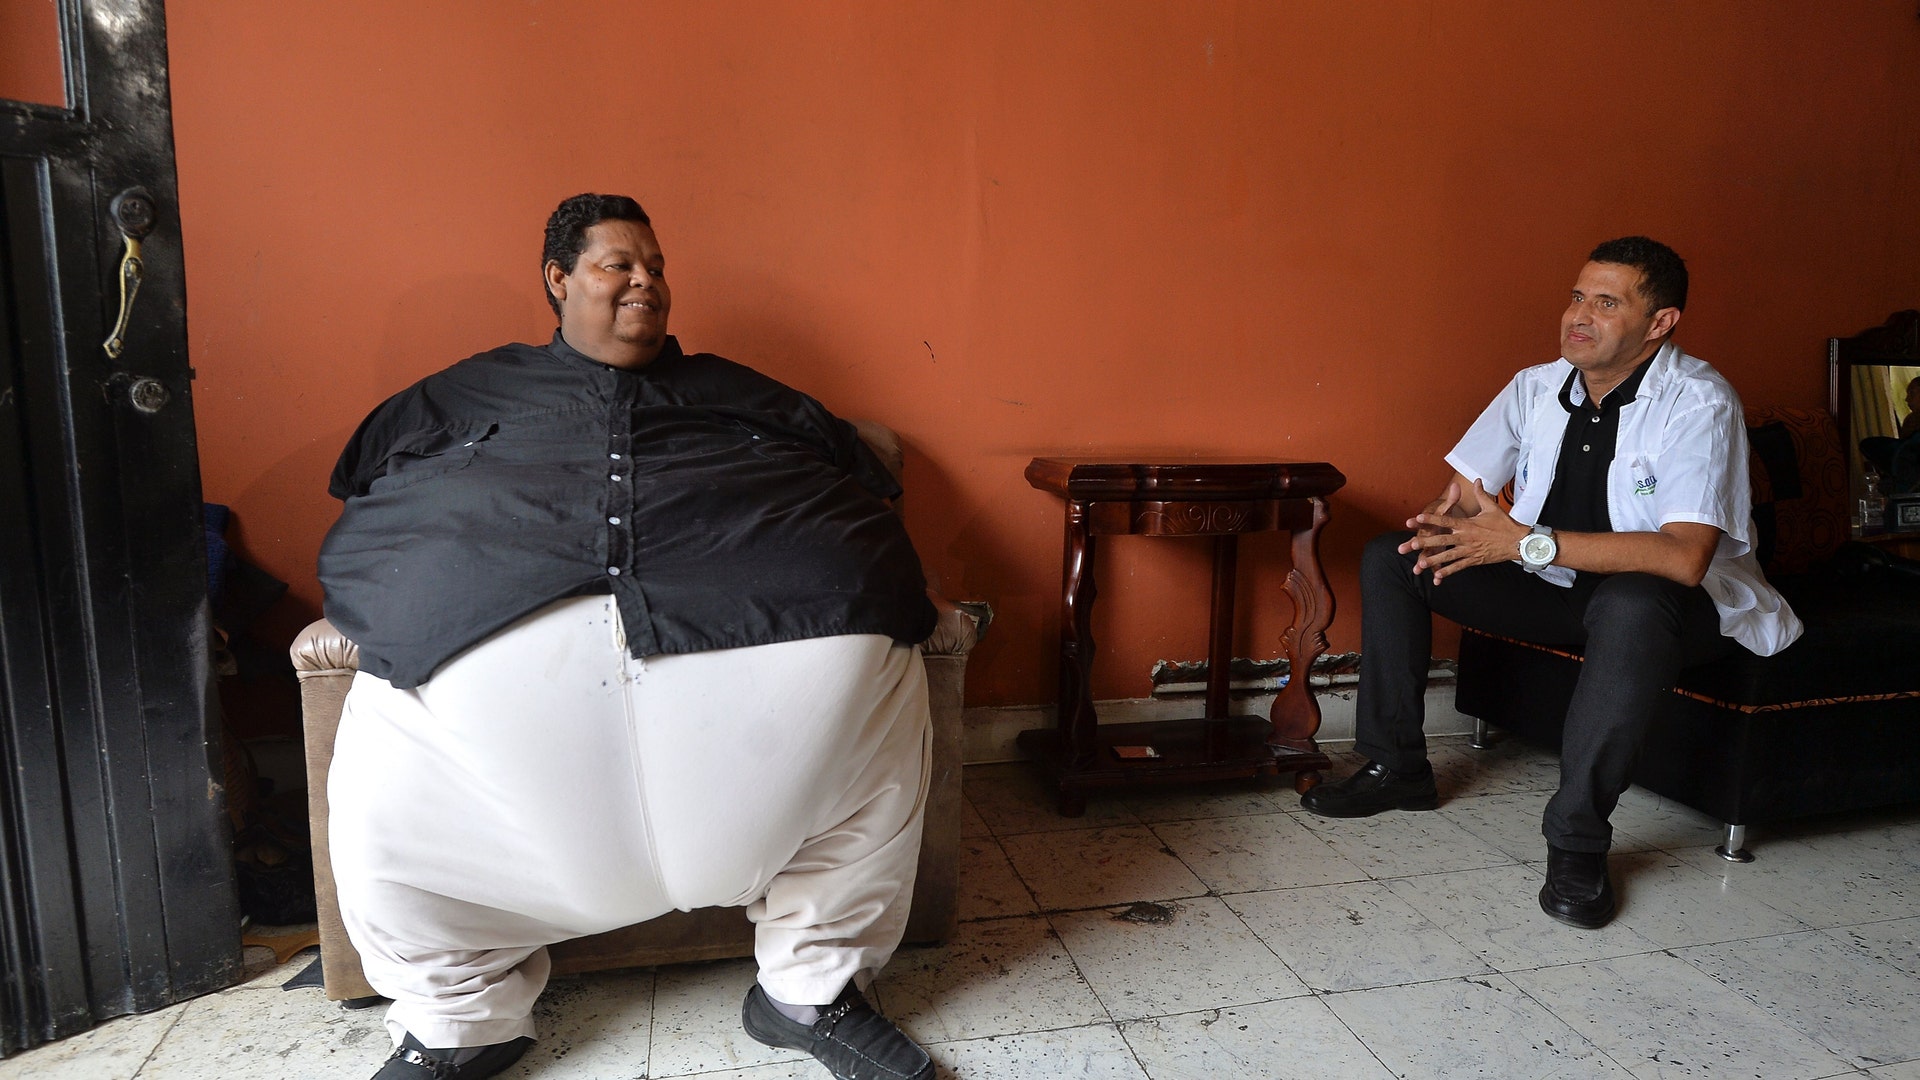 Самого жирного человека. Хуан Педро Франко 600 кг.